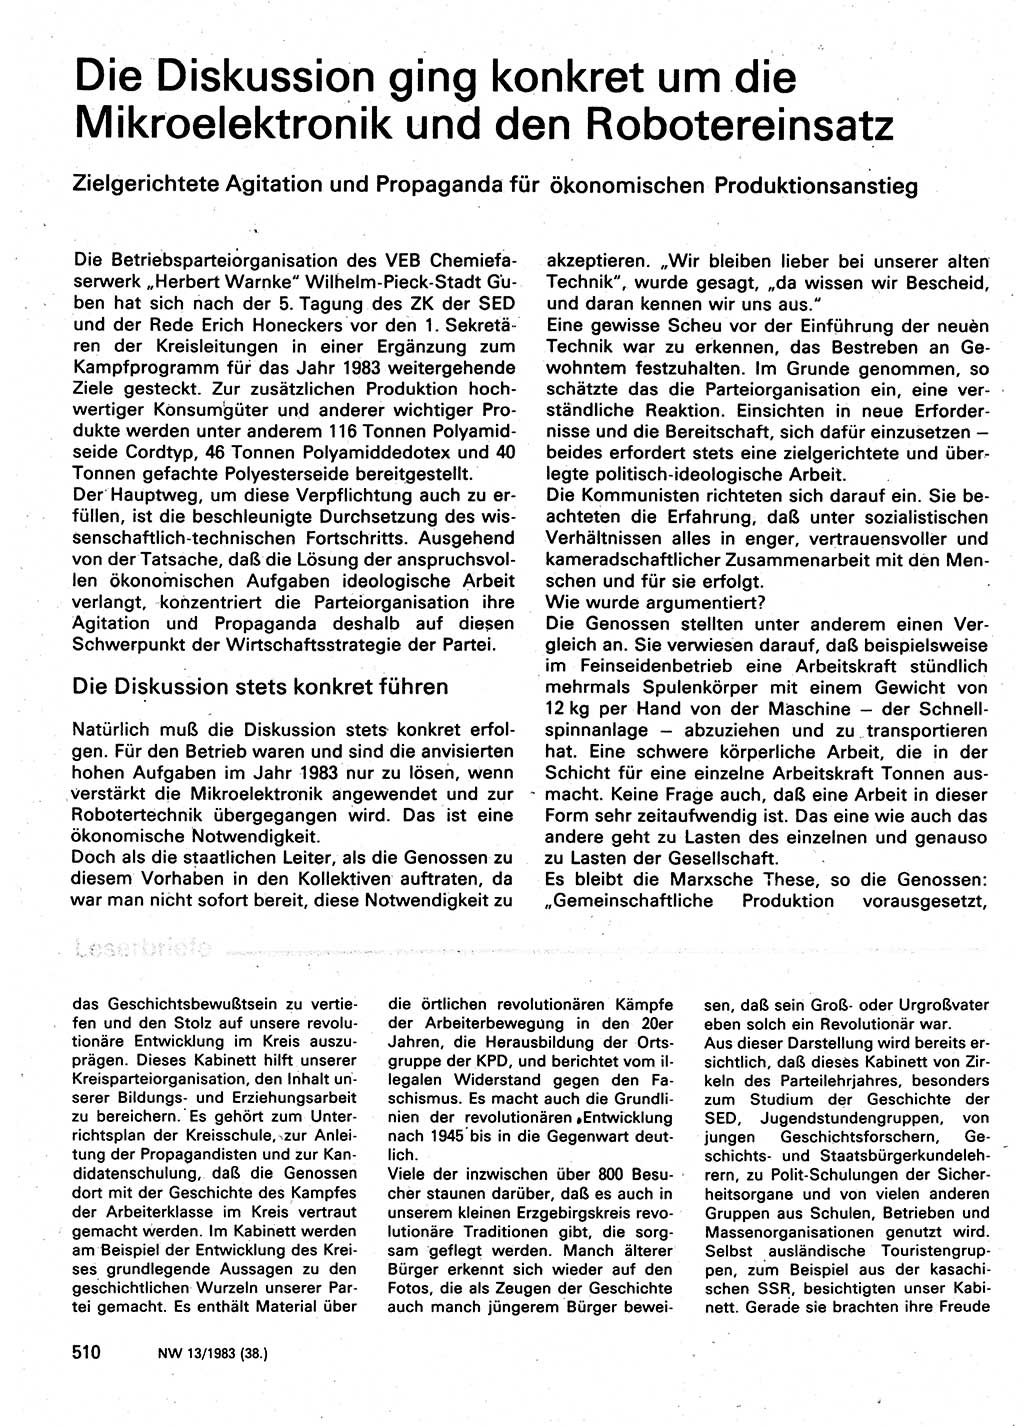 Neuer Weg (NW), Organ des Zentralkomitees (ZK) der SED (Sozialistische Einheitspartei Deutschlands) für Fragen des Parteilebens, 38. Jahrgang [Deutsche Demokratische Republik (DDR)] 1983, Seite 510 (NW ZK SED DDR 1983, S. 510)